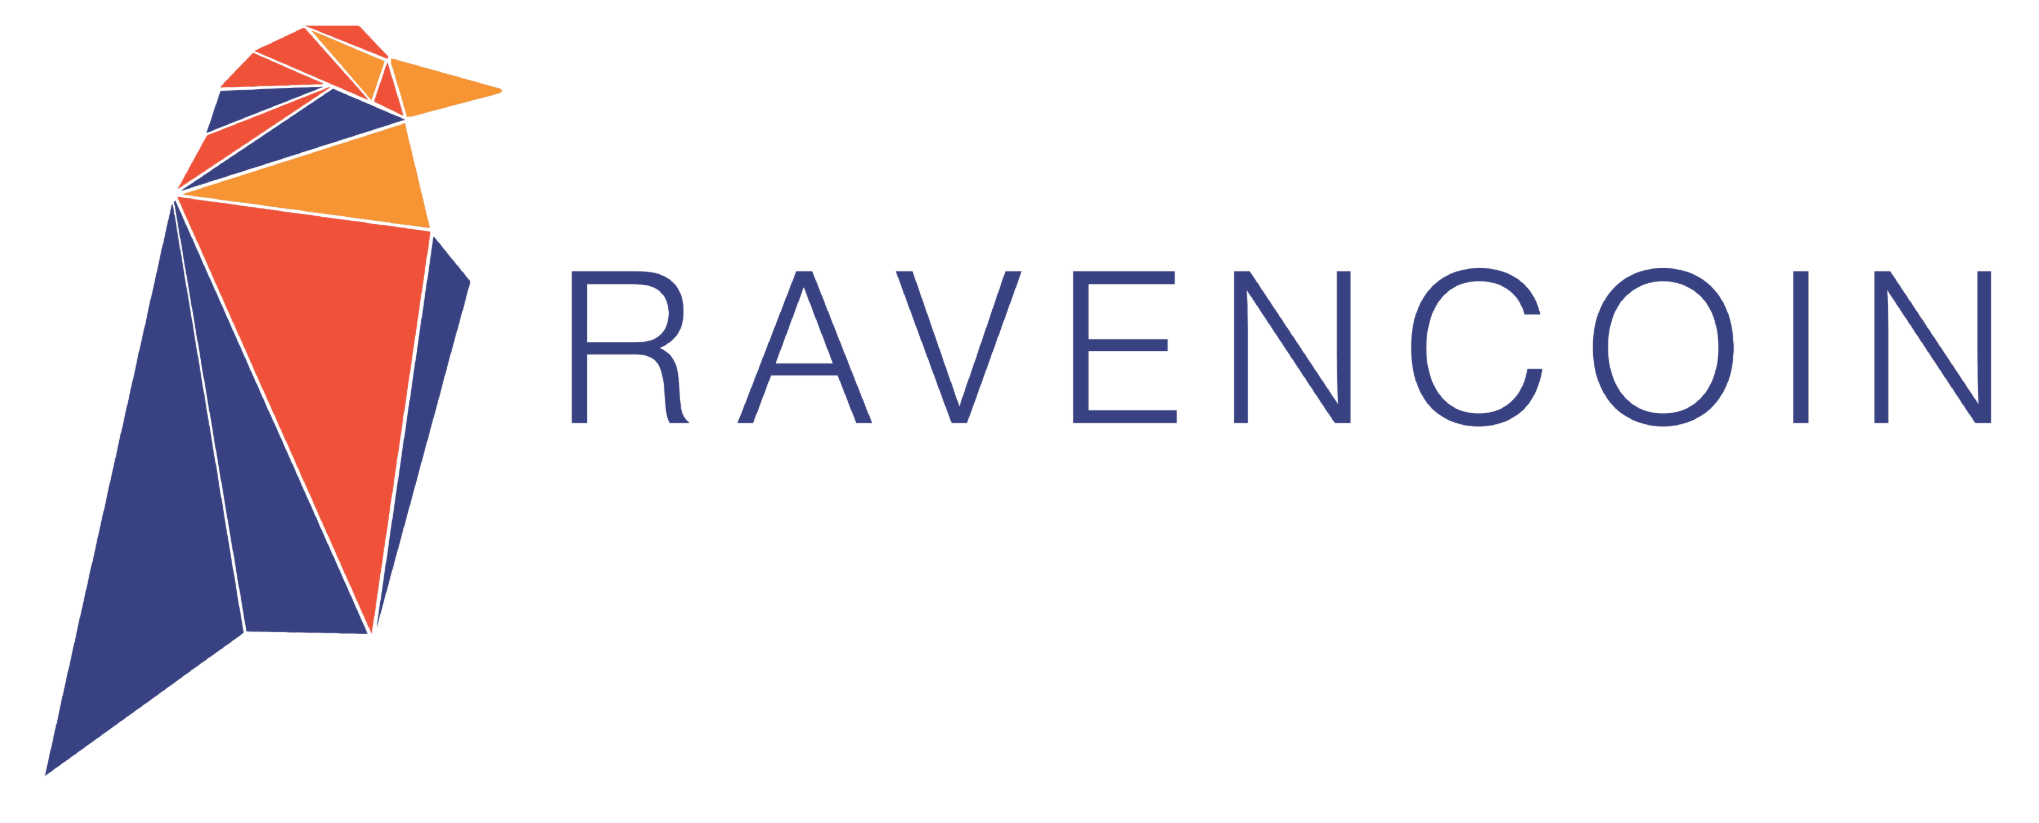 Vad är Ravencoin? $RVN - Asia Crypto idag